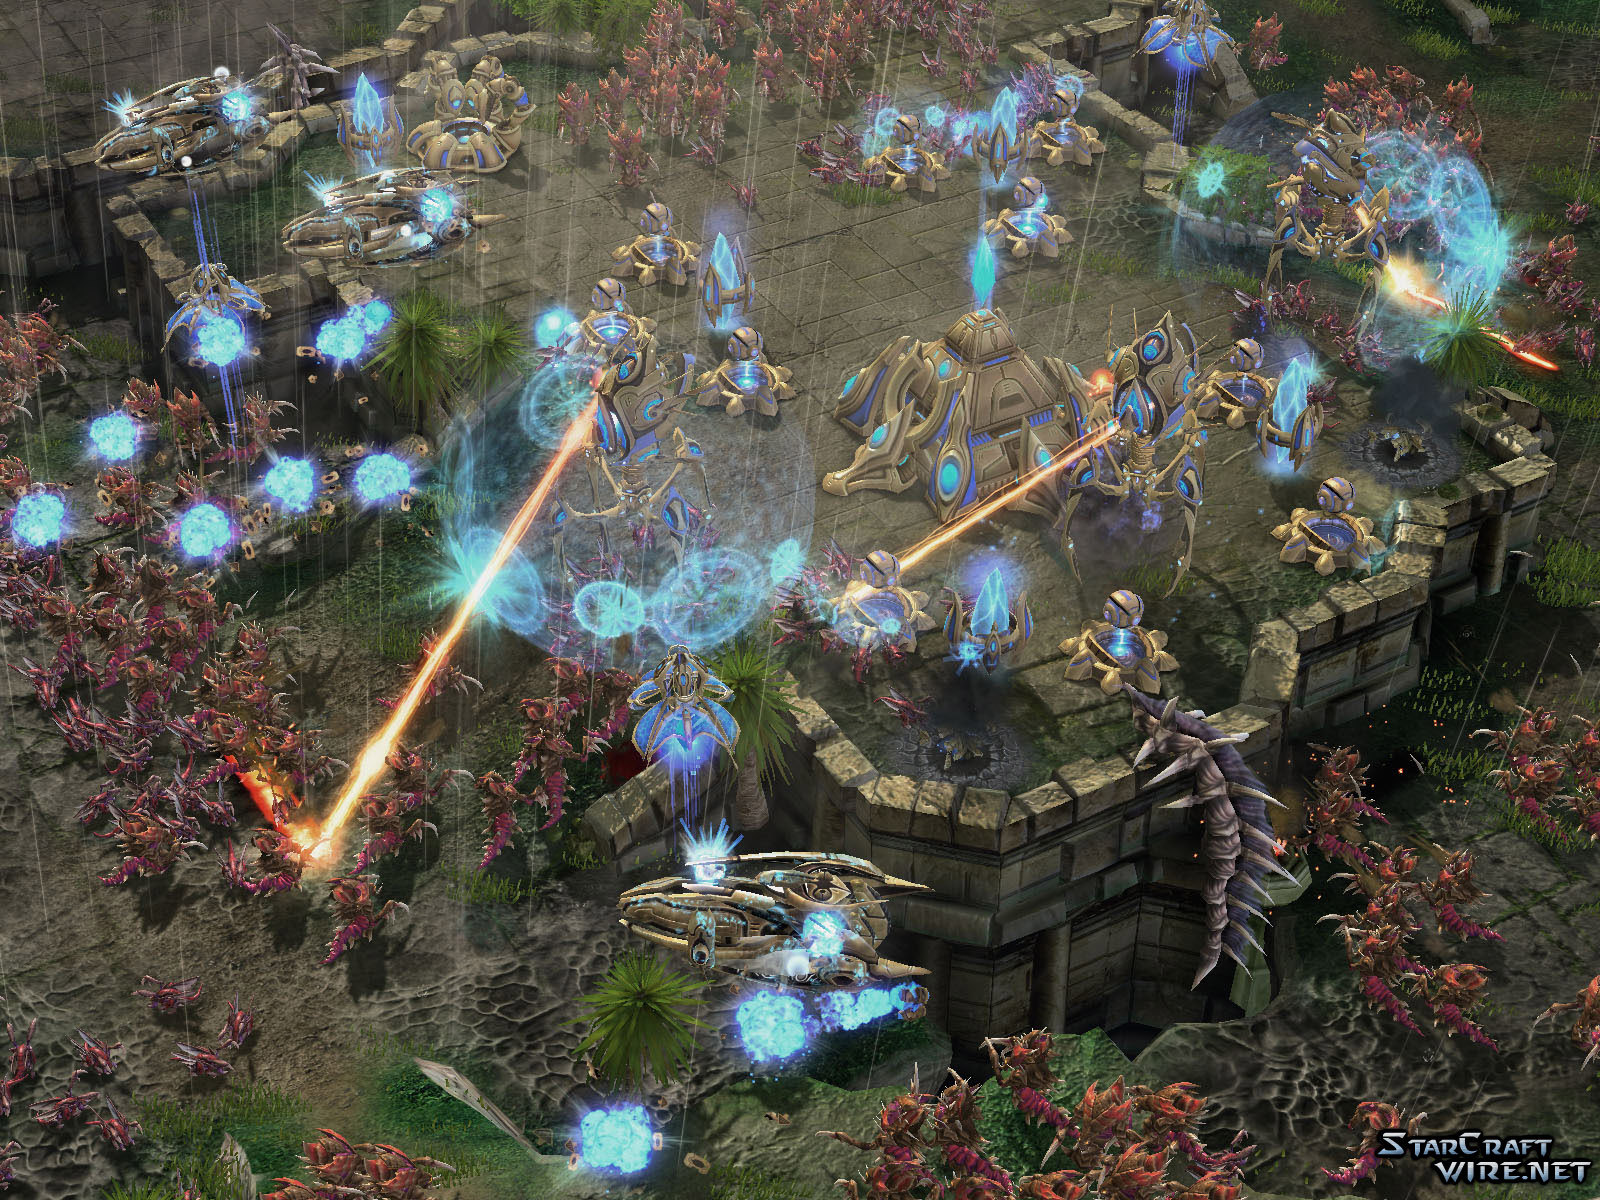 Immagine pubblicata in relazione al seguente contenuto: Blizzard, 8 nuovi screenshots di StarCraft II in single player | Nome immagine: news9522_6.jpg